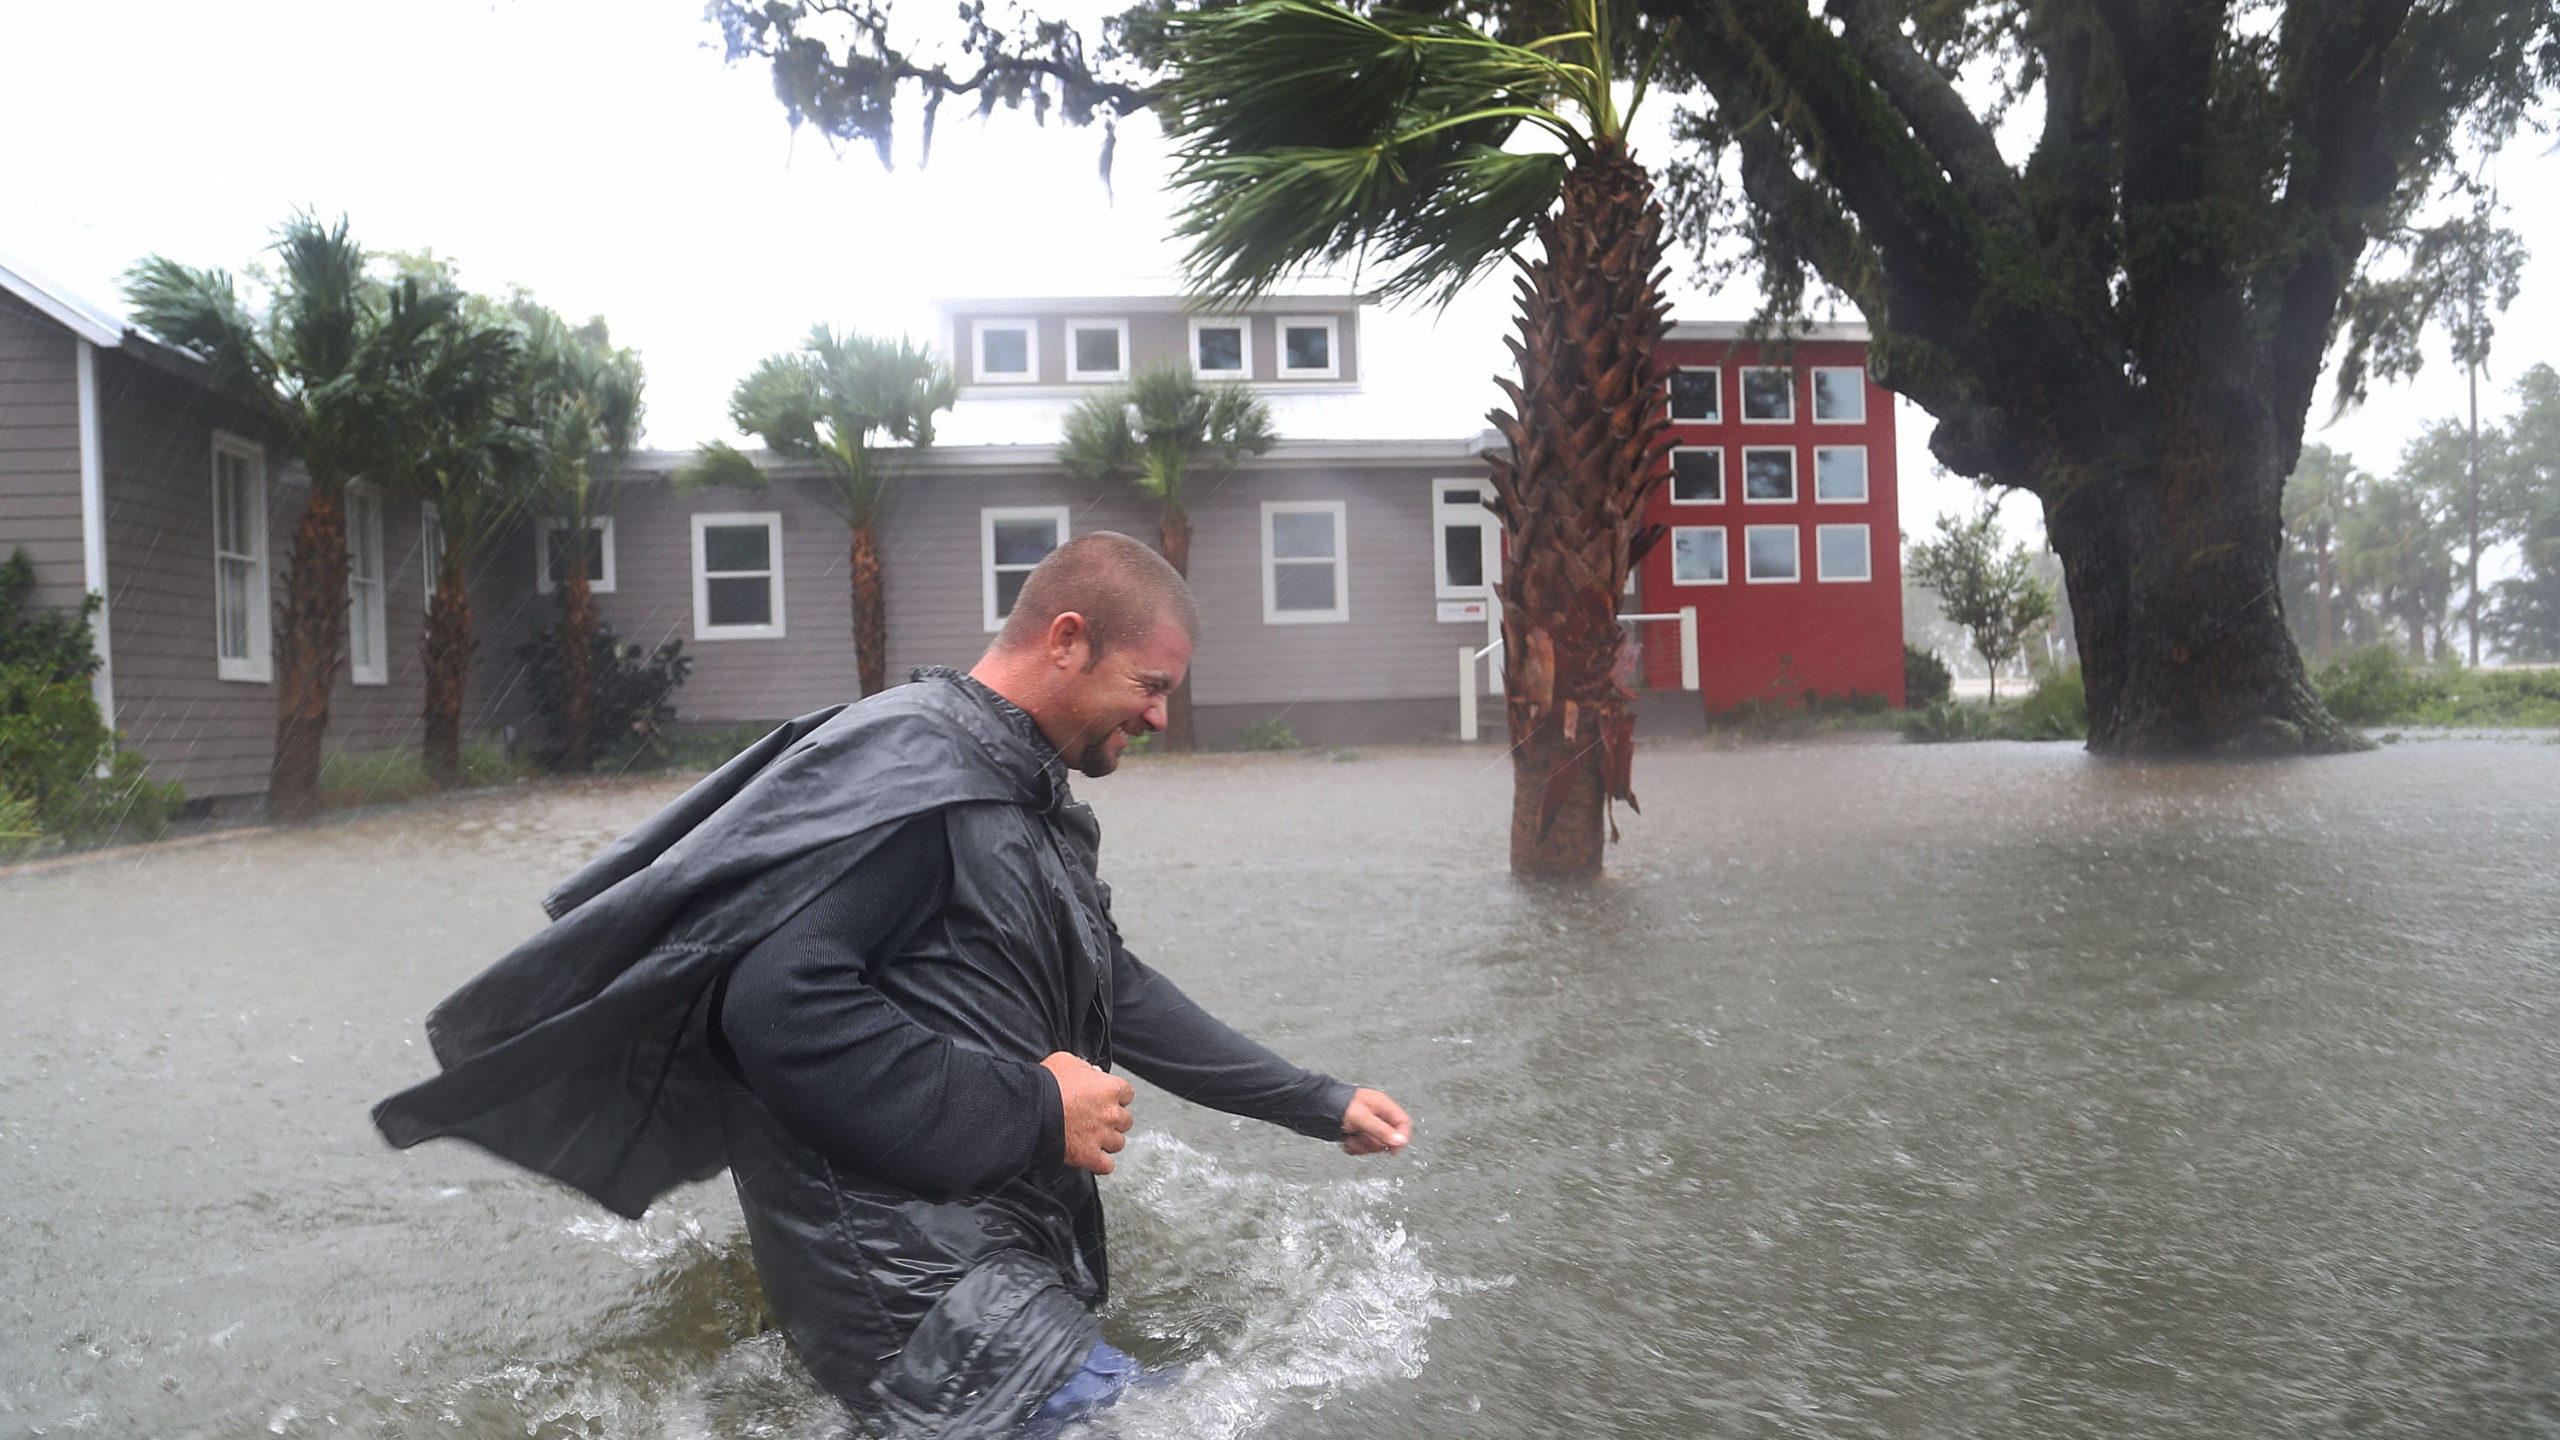 North Carolina Is Underwater After Hurricane Matthew